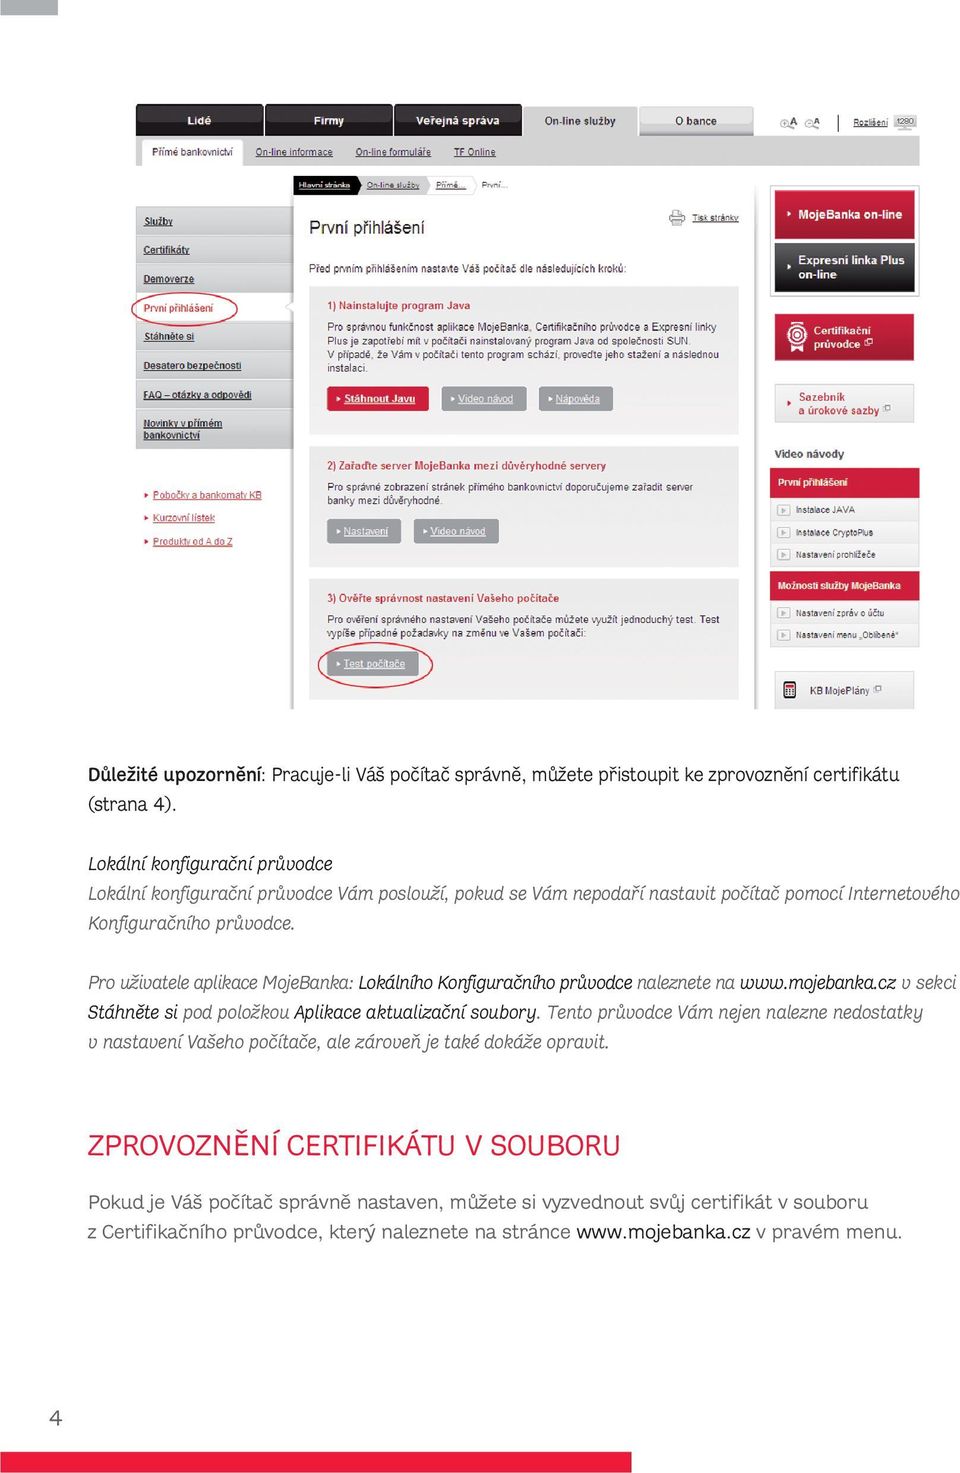 Pro uživatele aplikace MojeBanka: Lokálního Konfiguračního průvodce naleznete na www.mojebanka.cz v sekci Stáhněte si pod položkou Aplikace aktualizační soubory.